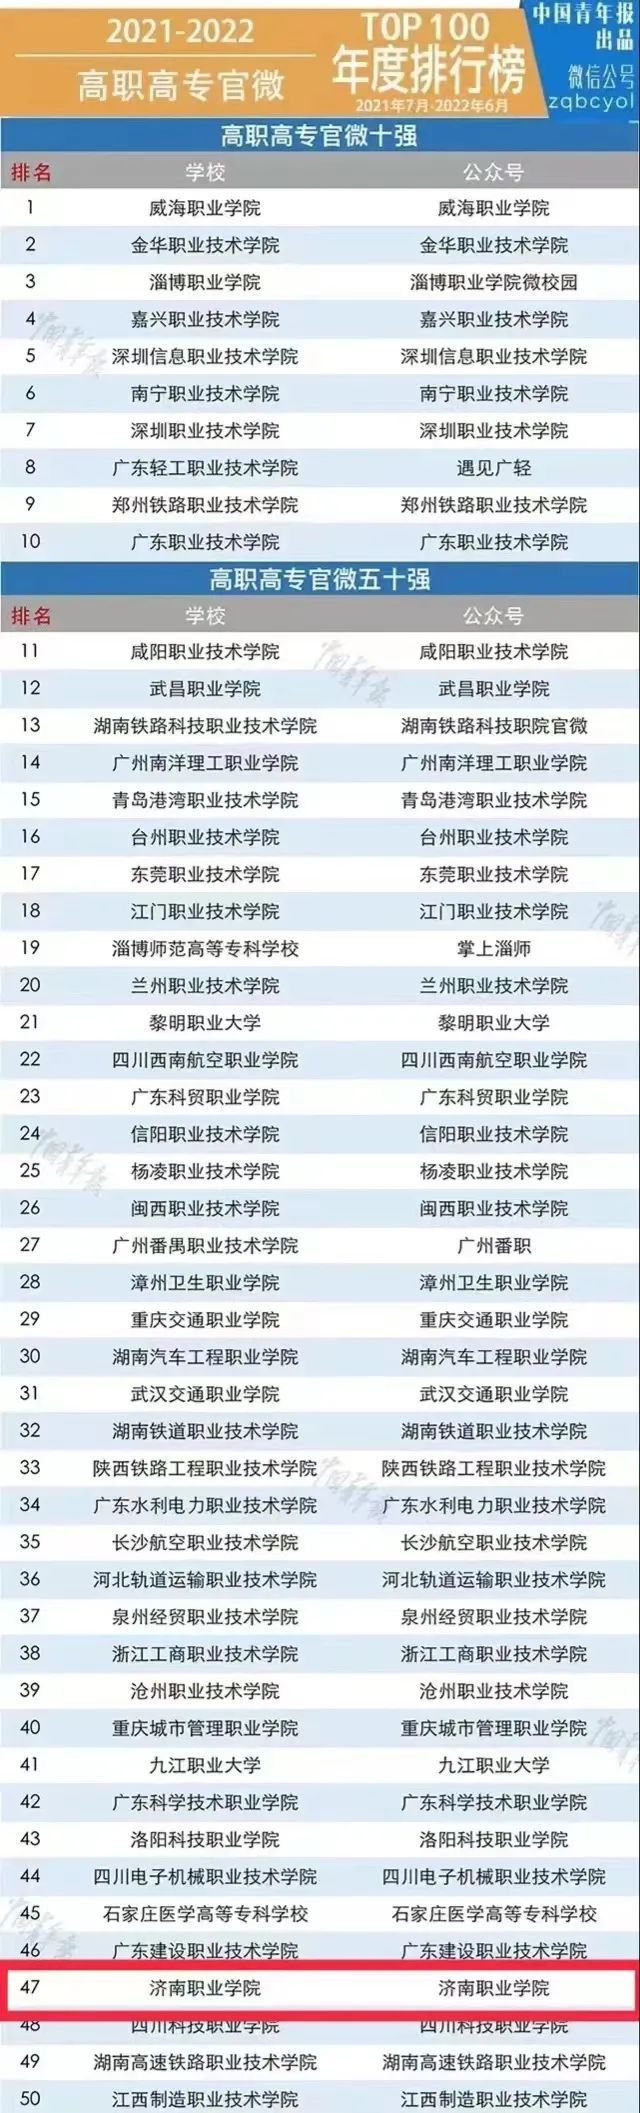 济南职业学院成功入选“中国高职高专院校官微百强”，排名第47位